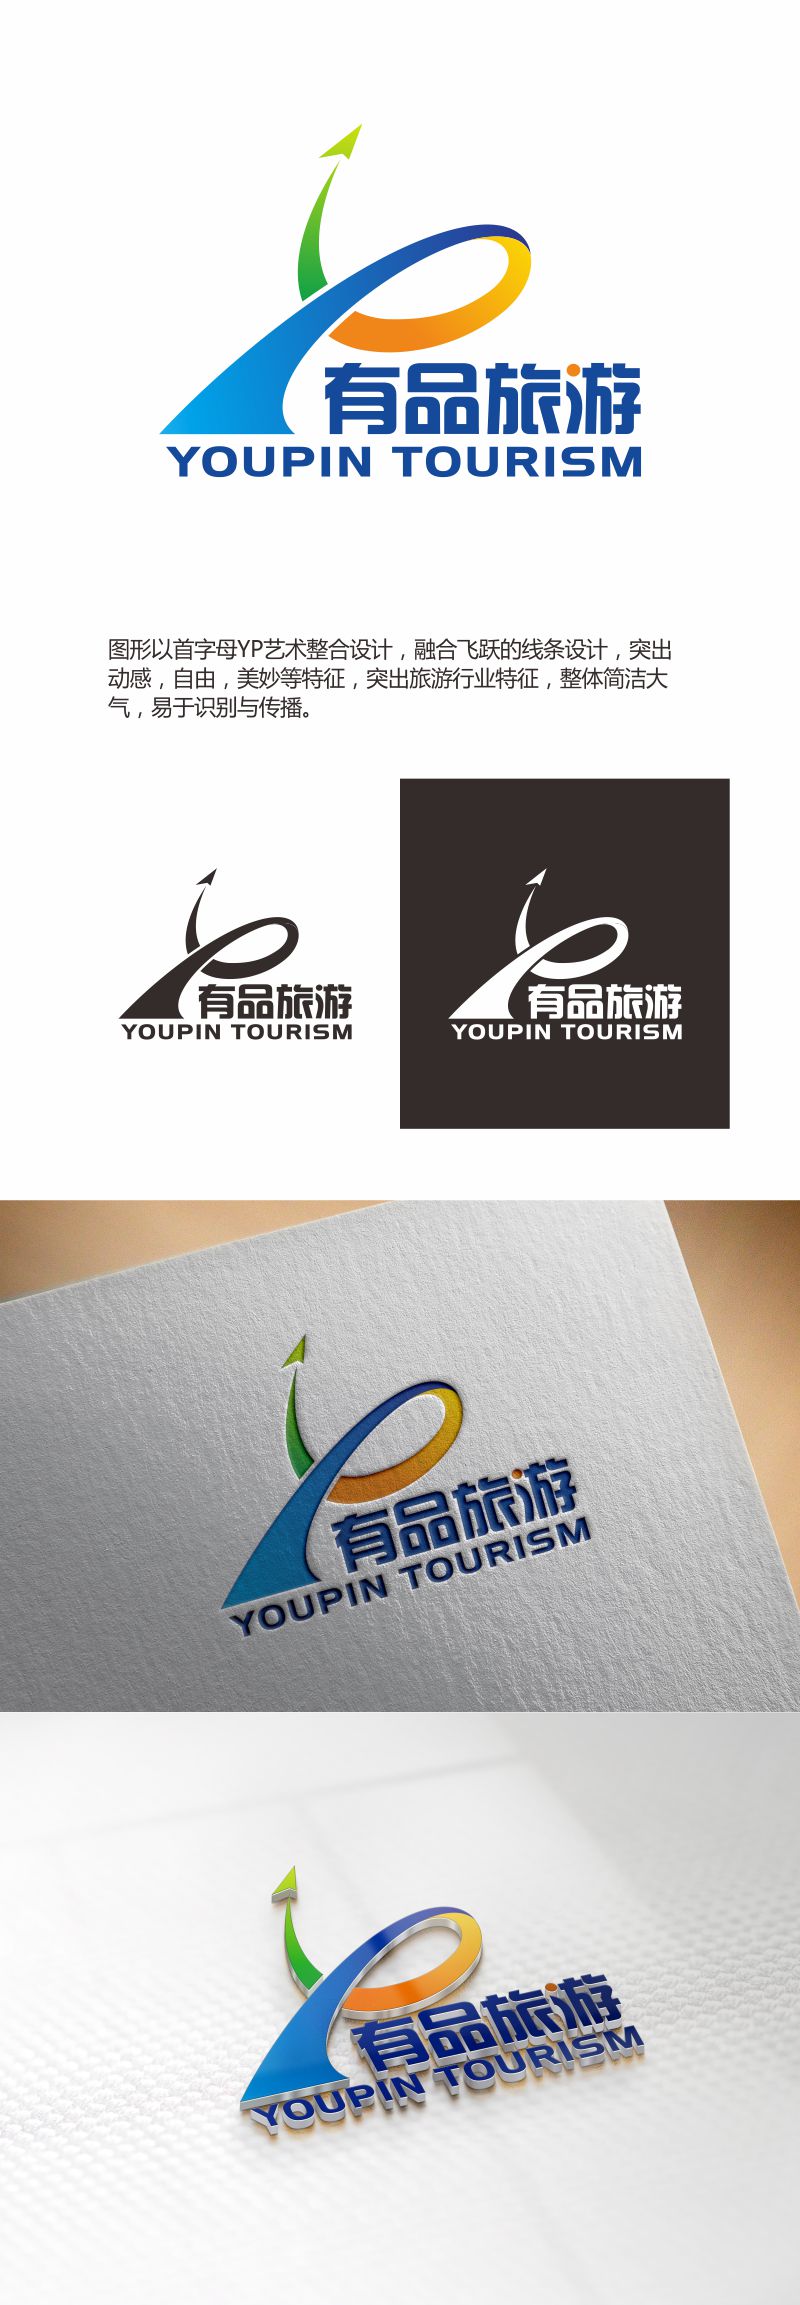 何嘉健的有品旅游logo设计